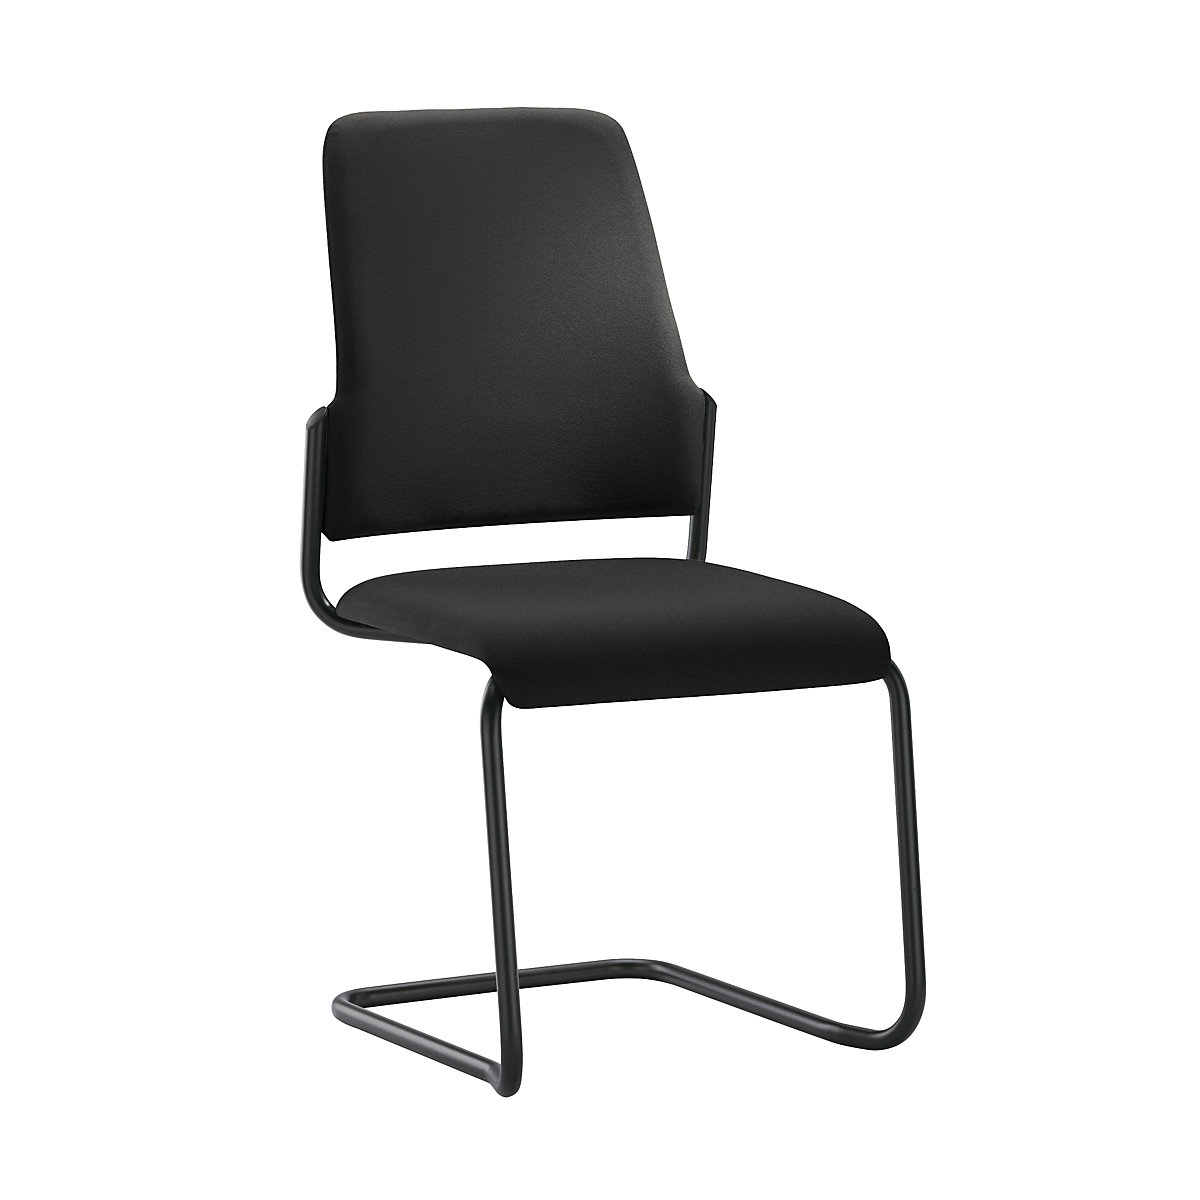 Bezoekersstoel GOAL, sledestoel, VE = 2 stuks – interstuhl, stoelframe zwart, zwart-3